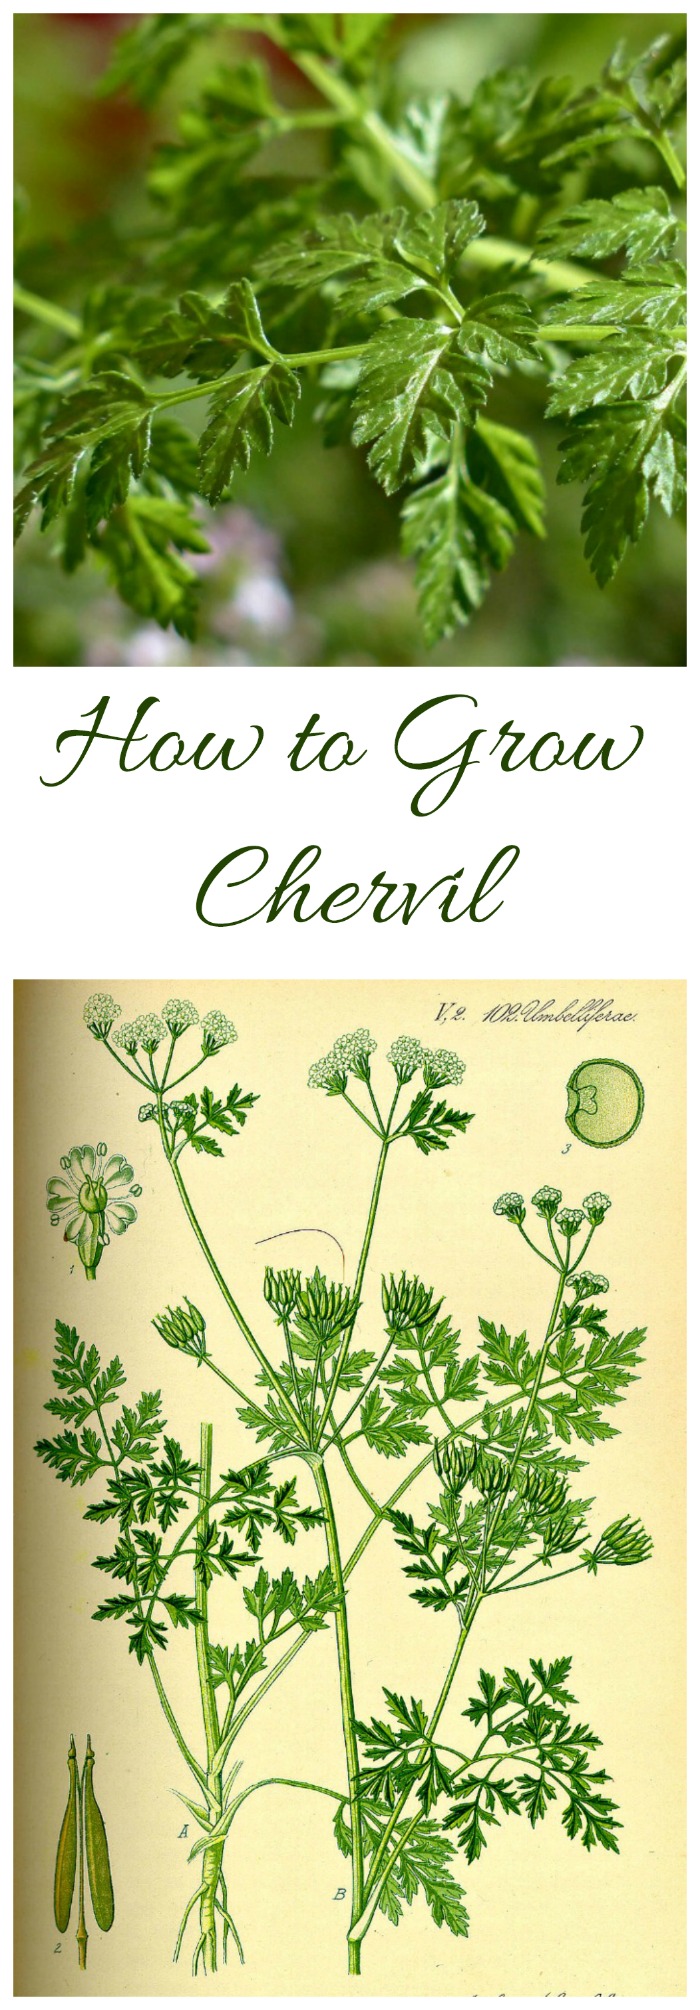 Trồng Chervil – Cách trồng Chervil Herb (Và một số chất thay thế!)